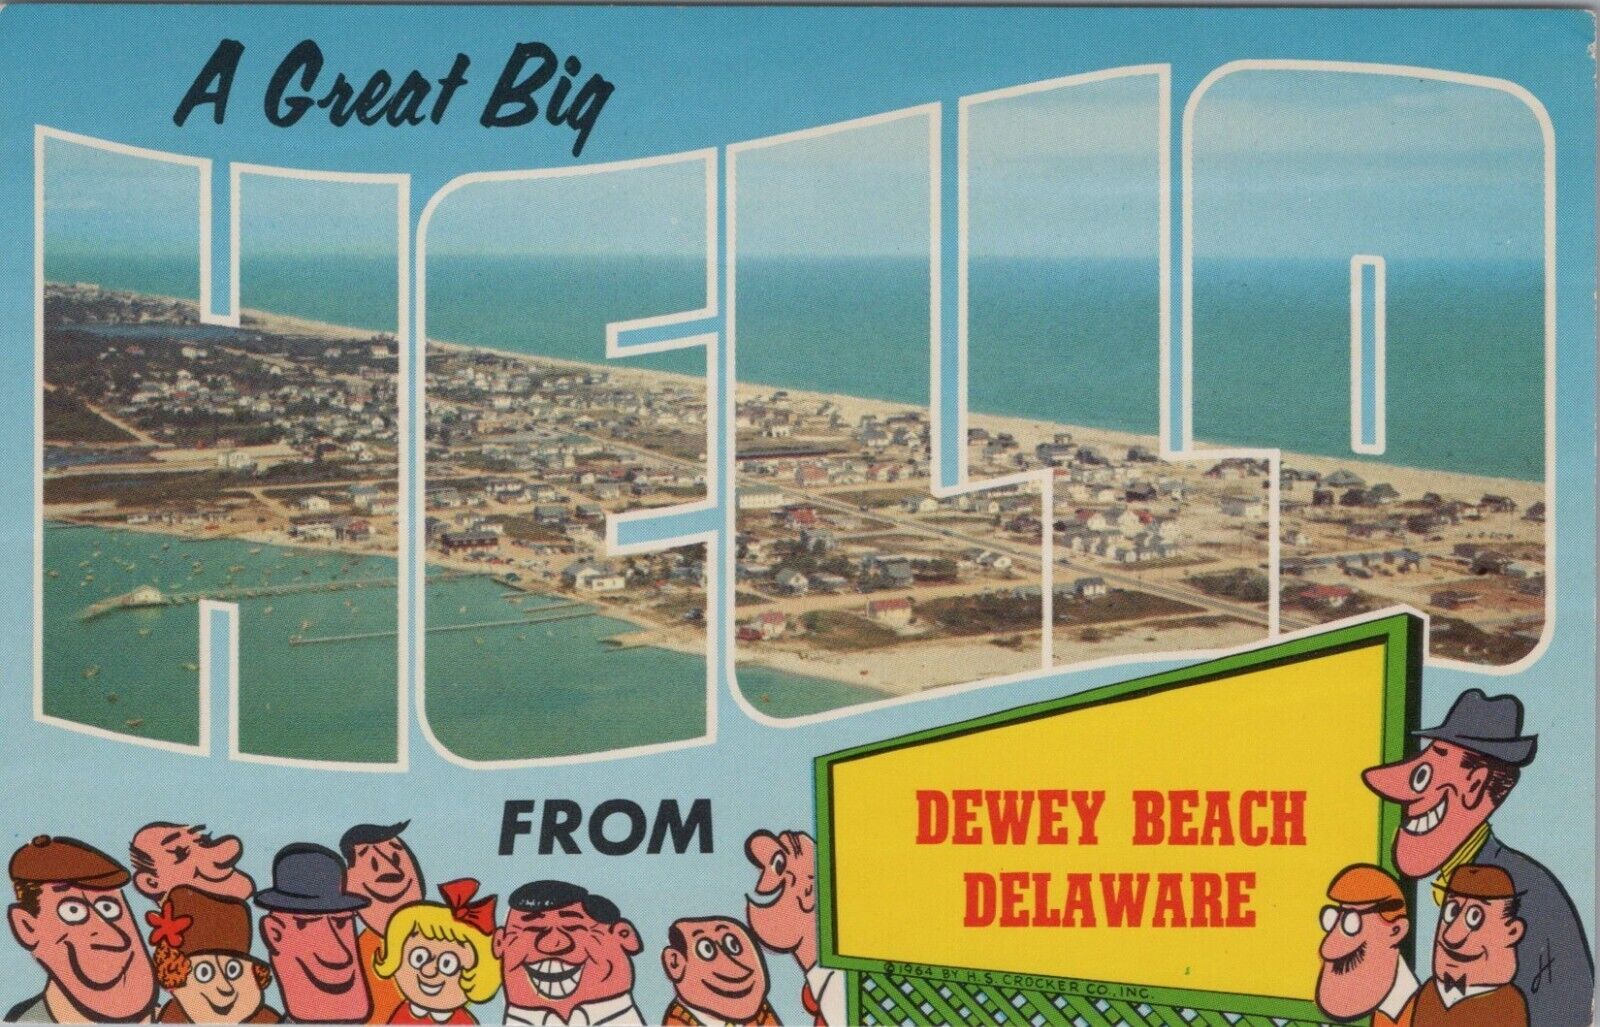 Dewey Beach Delaware A Great Big Hello Vintage Postcard